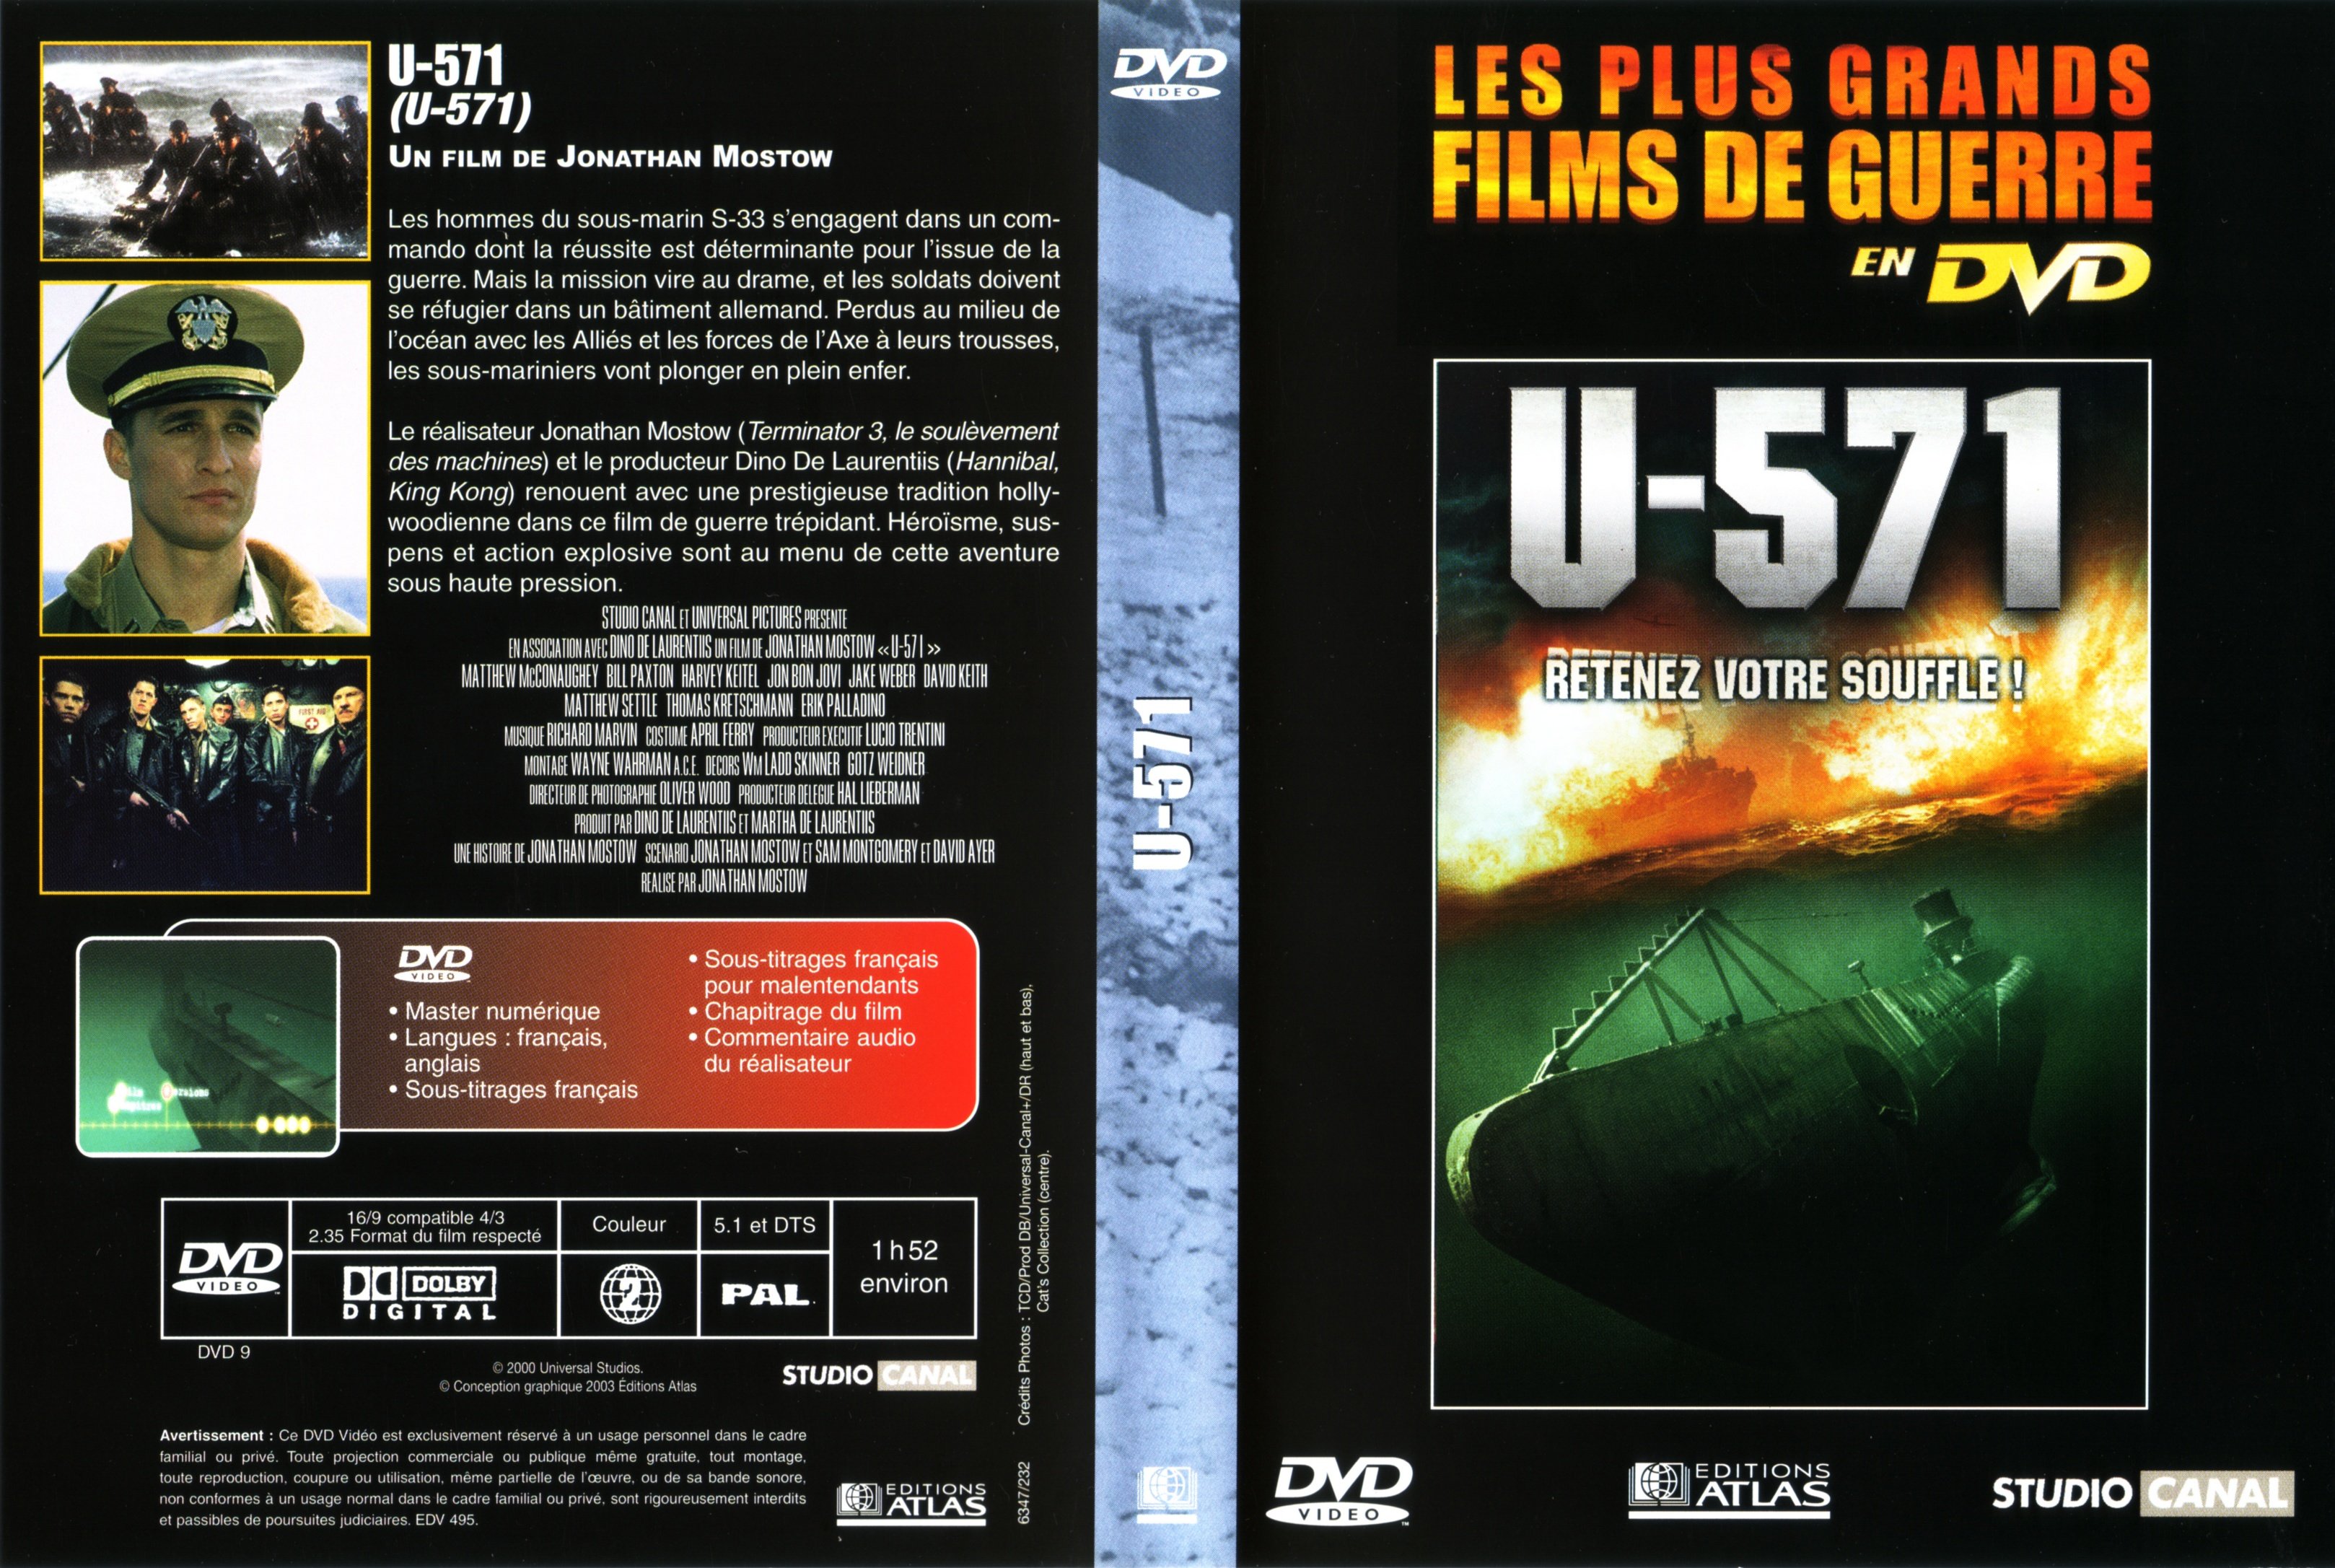 Jaquette DVD U-571 v3